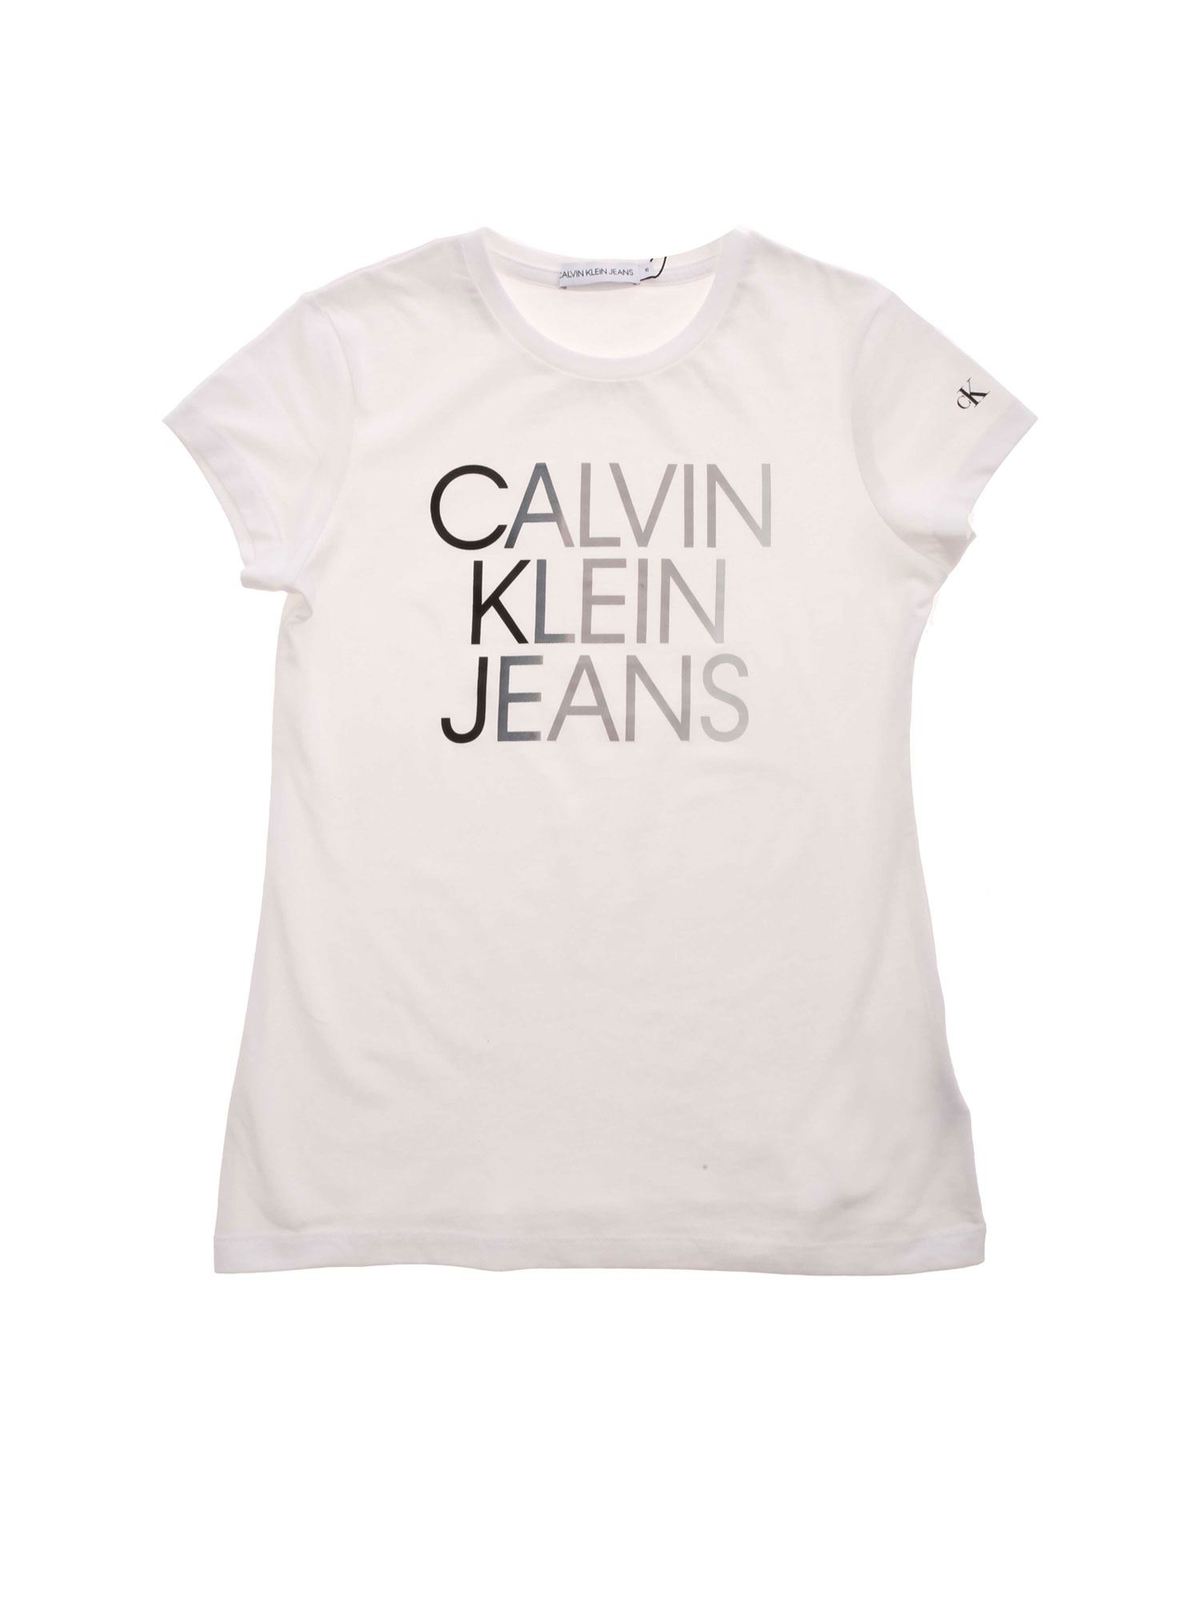 calvin klein t shirt print